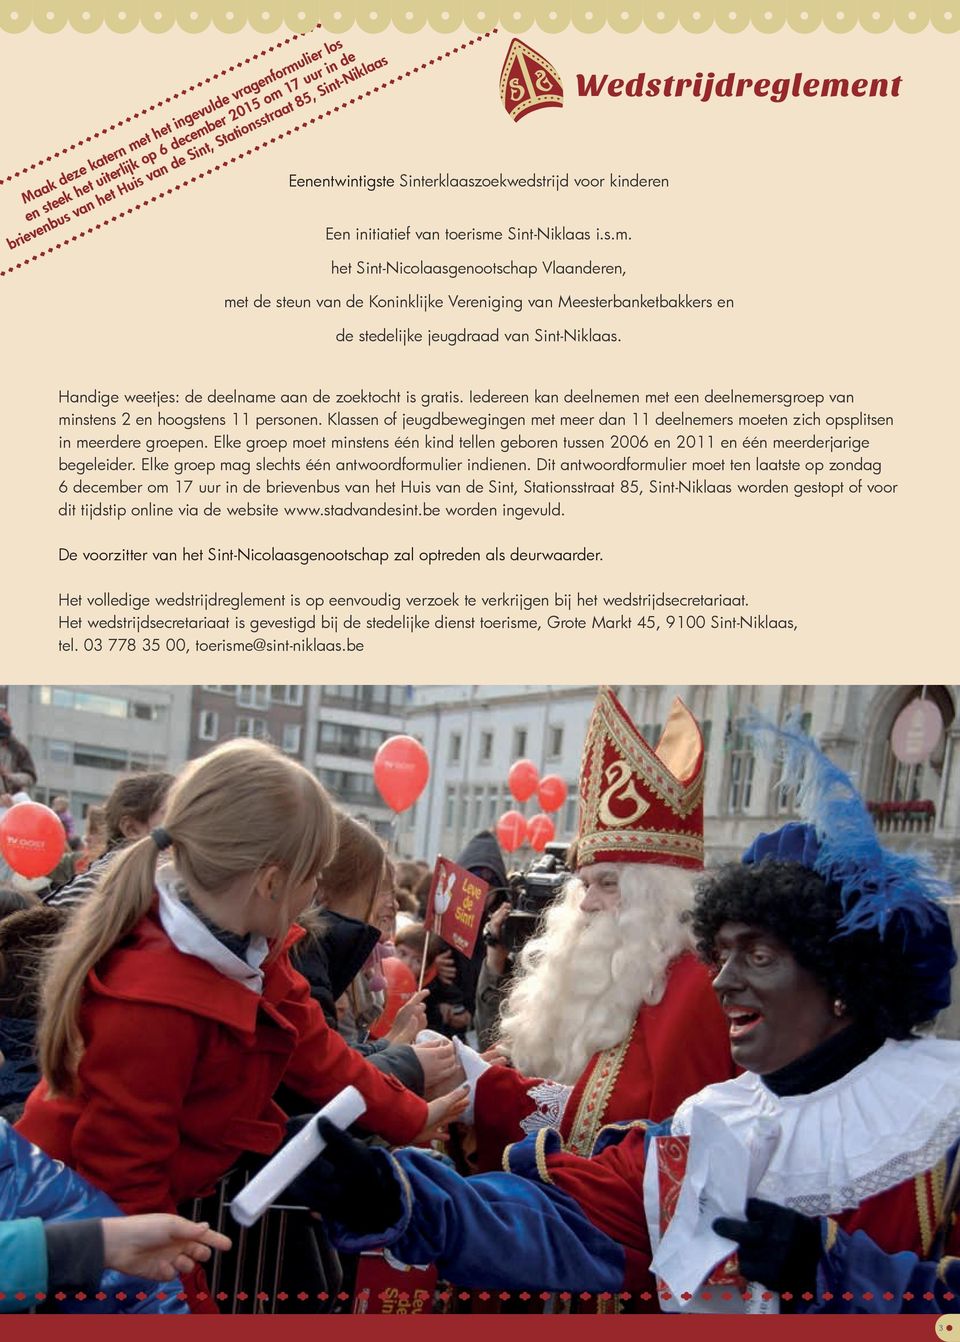 Sint-Niklaas i.s.m. het Sint-Nicolaasgenootschap Vlaanderen, Wedstrijdreglement met de steun van de Koninklijke Vereniging van Meesterbanketbakkers en de stedelijke jeugdraad van Sint-Niklaas.